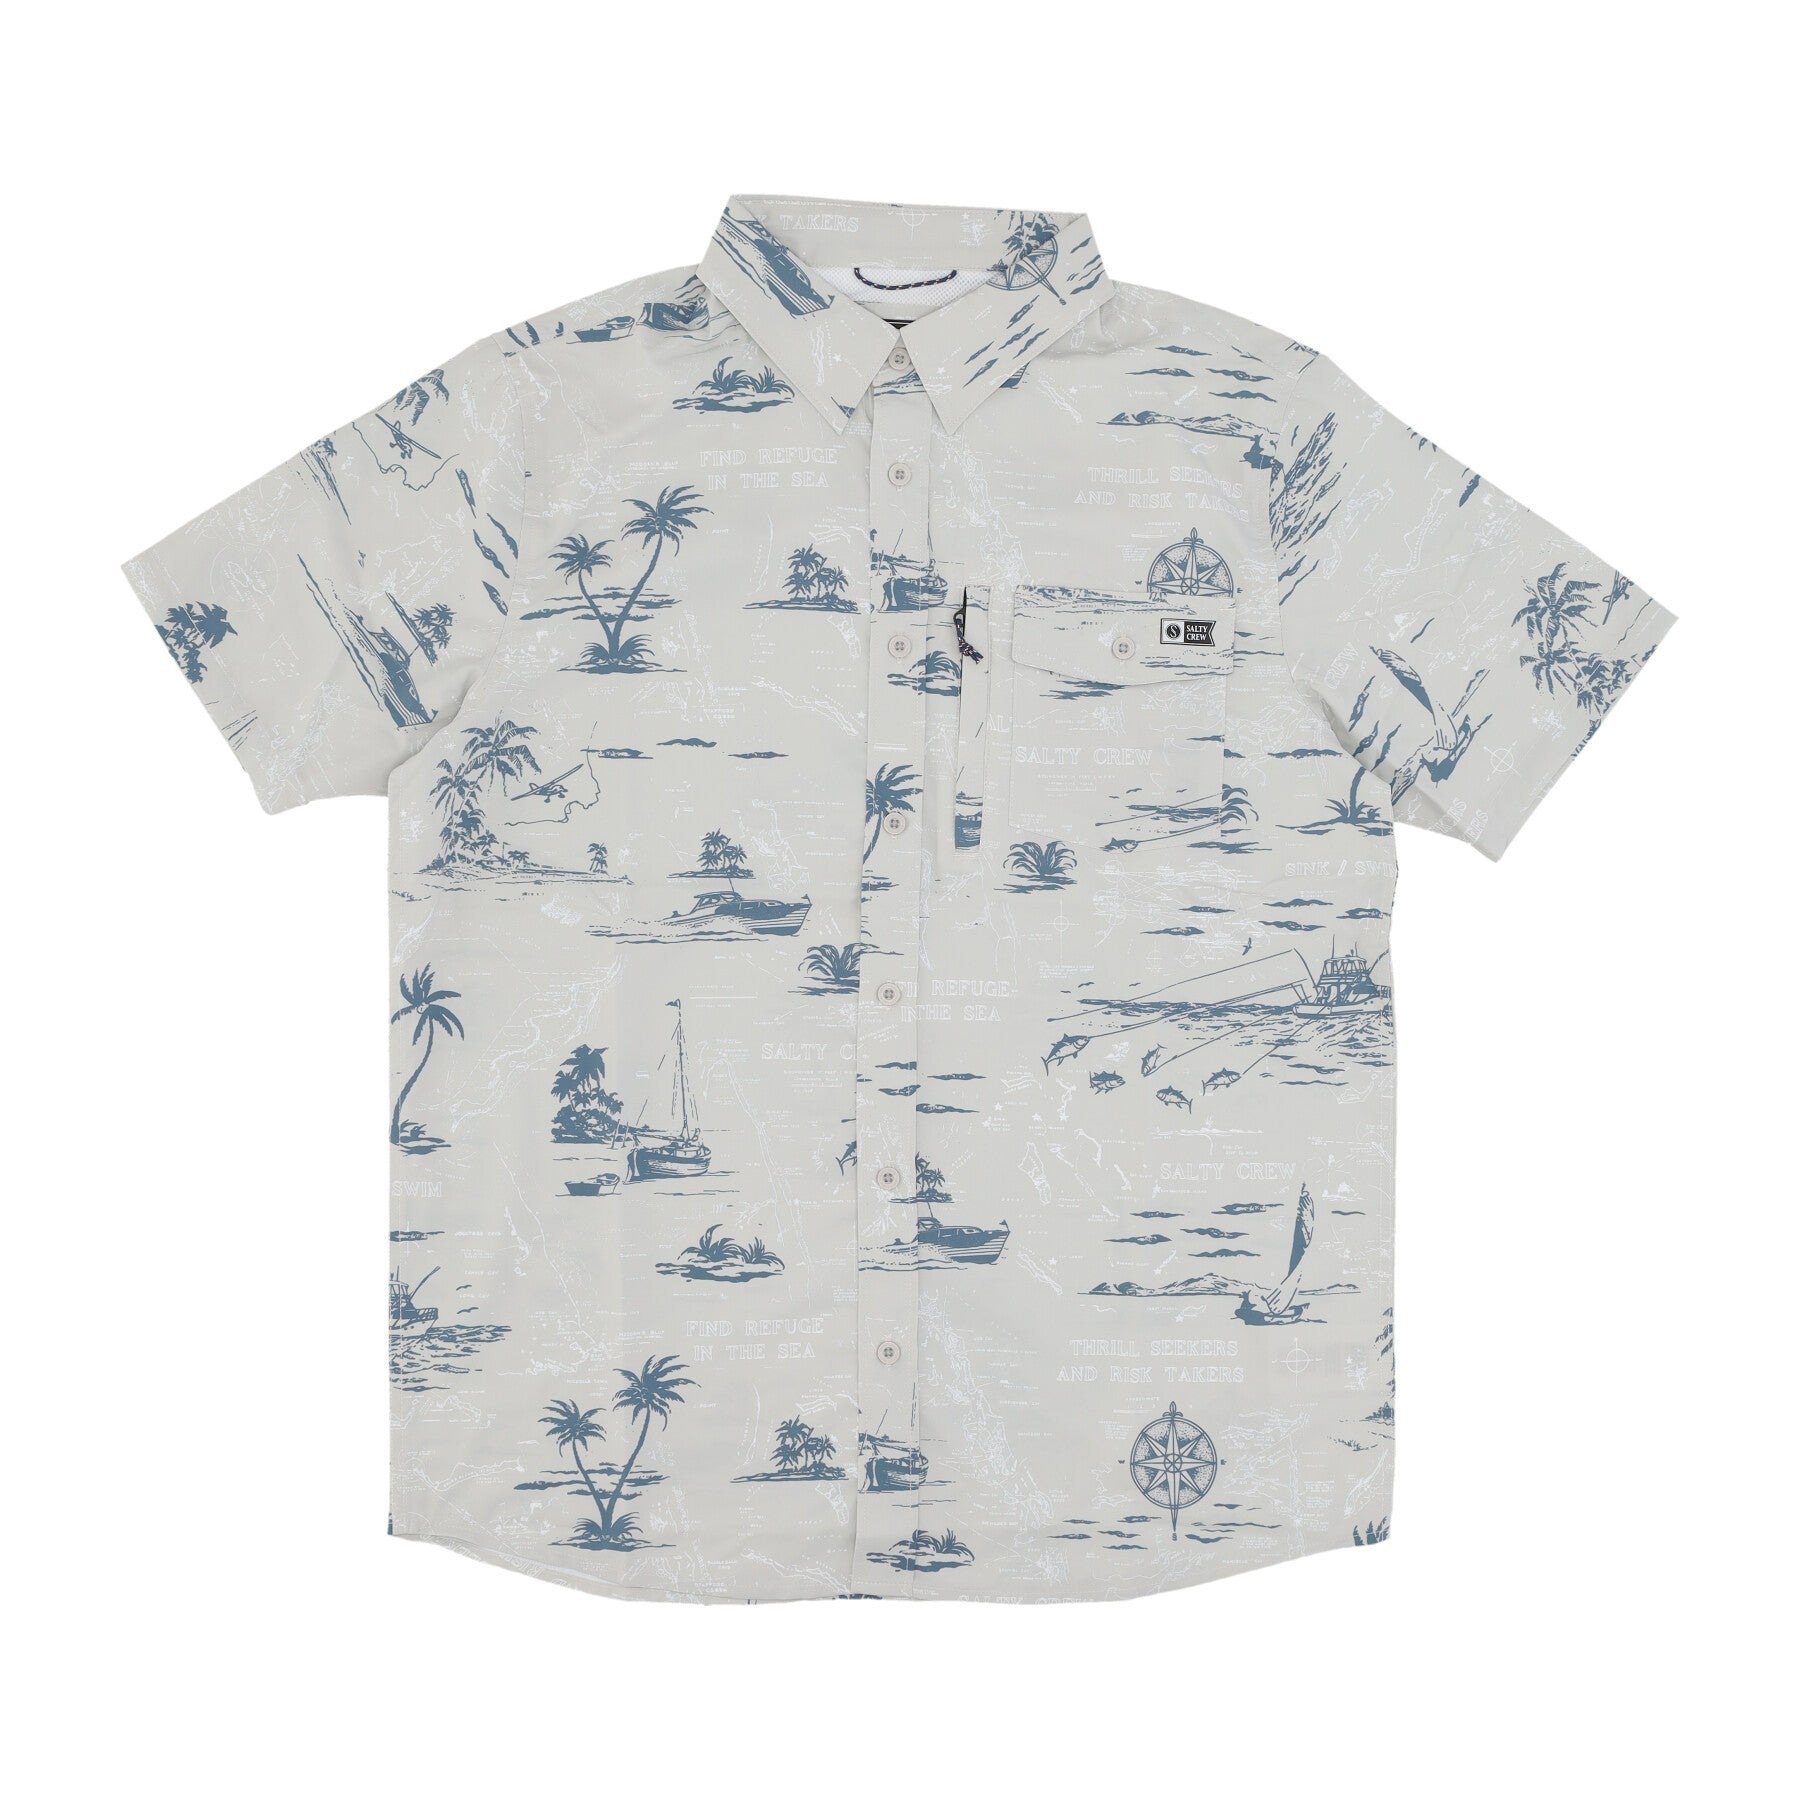 Men's Short Sleeve Shirt Seafarer Tech Woven Shirt